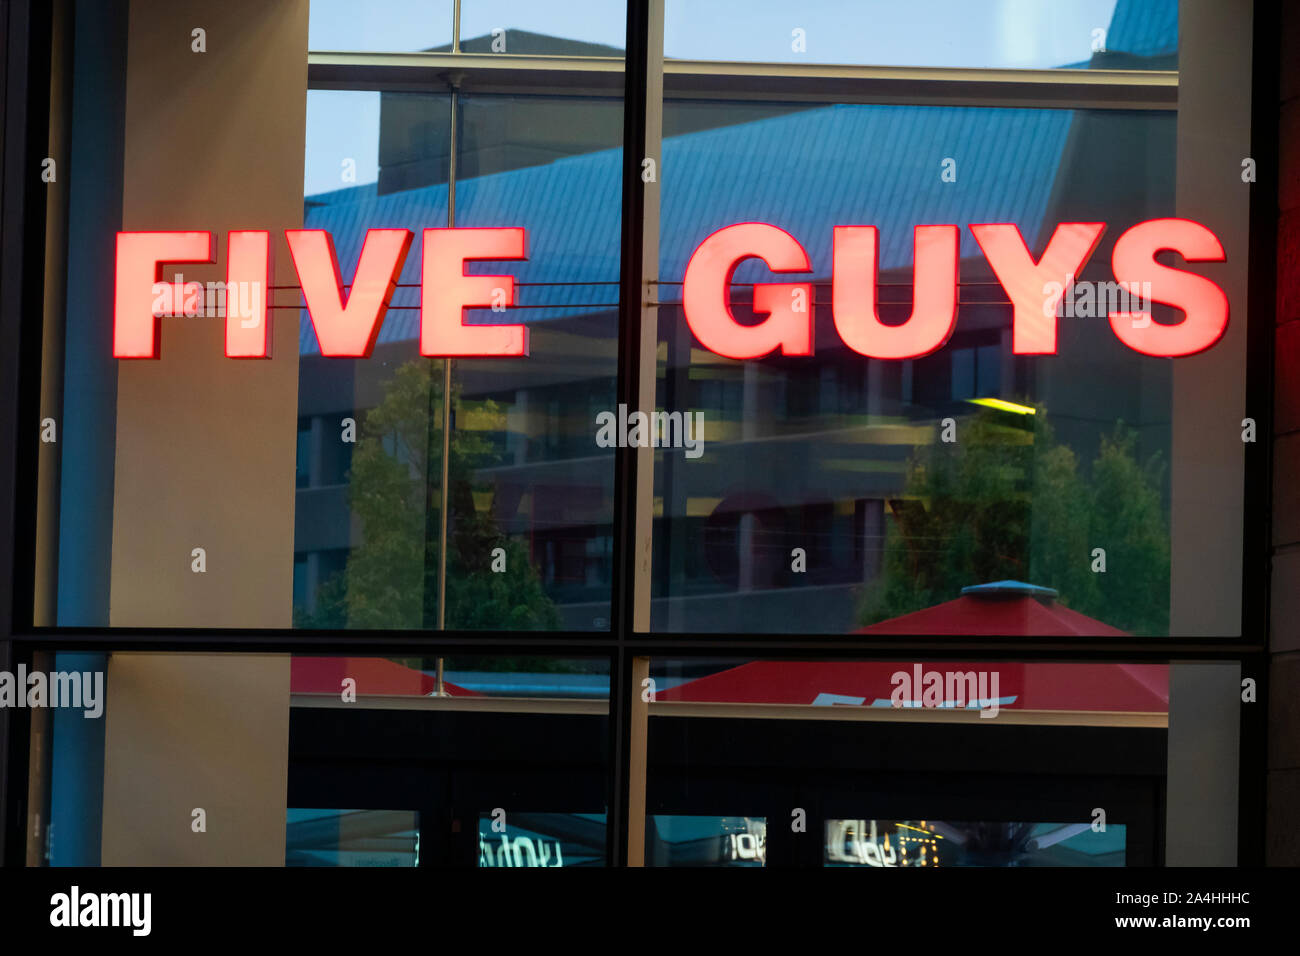 Cinque ragazzi burger ristorante in Liverpool ONE shopping mall Foto Stock